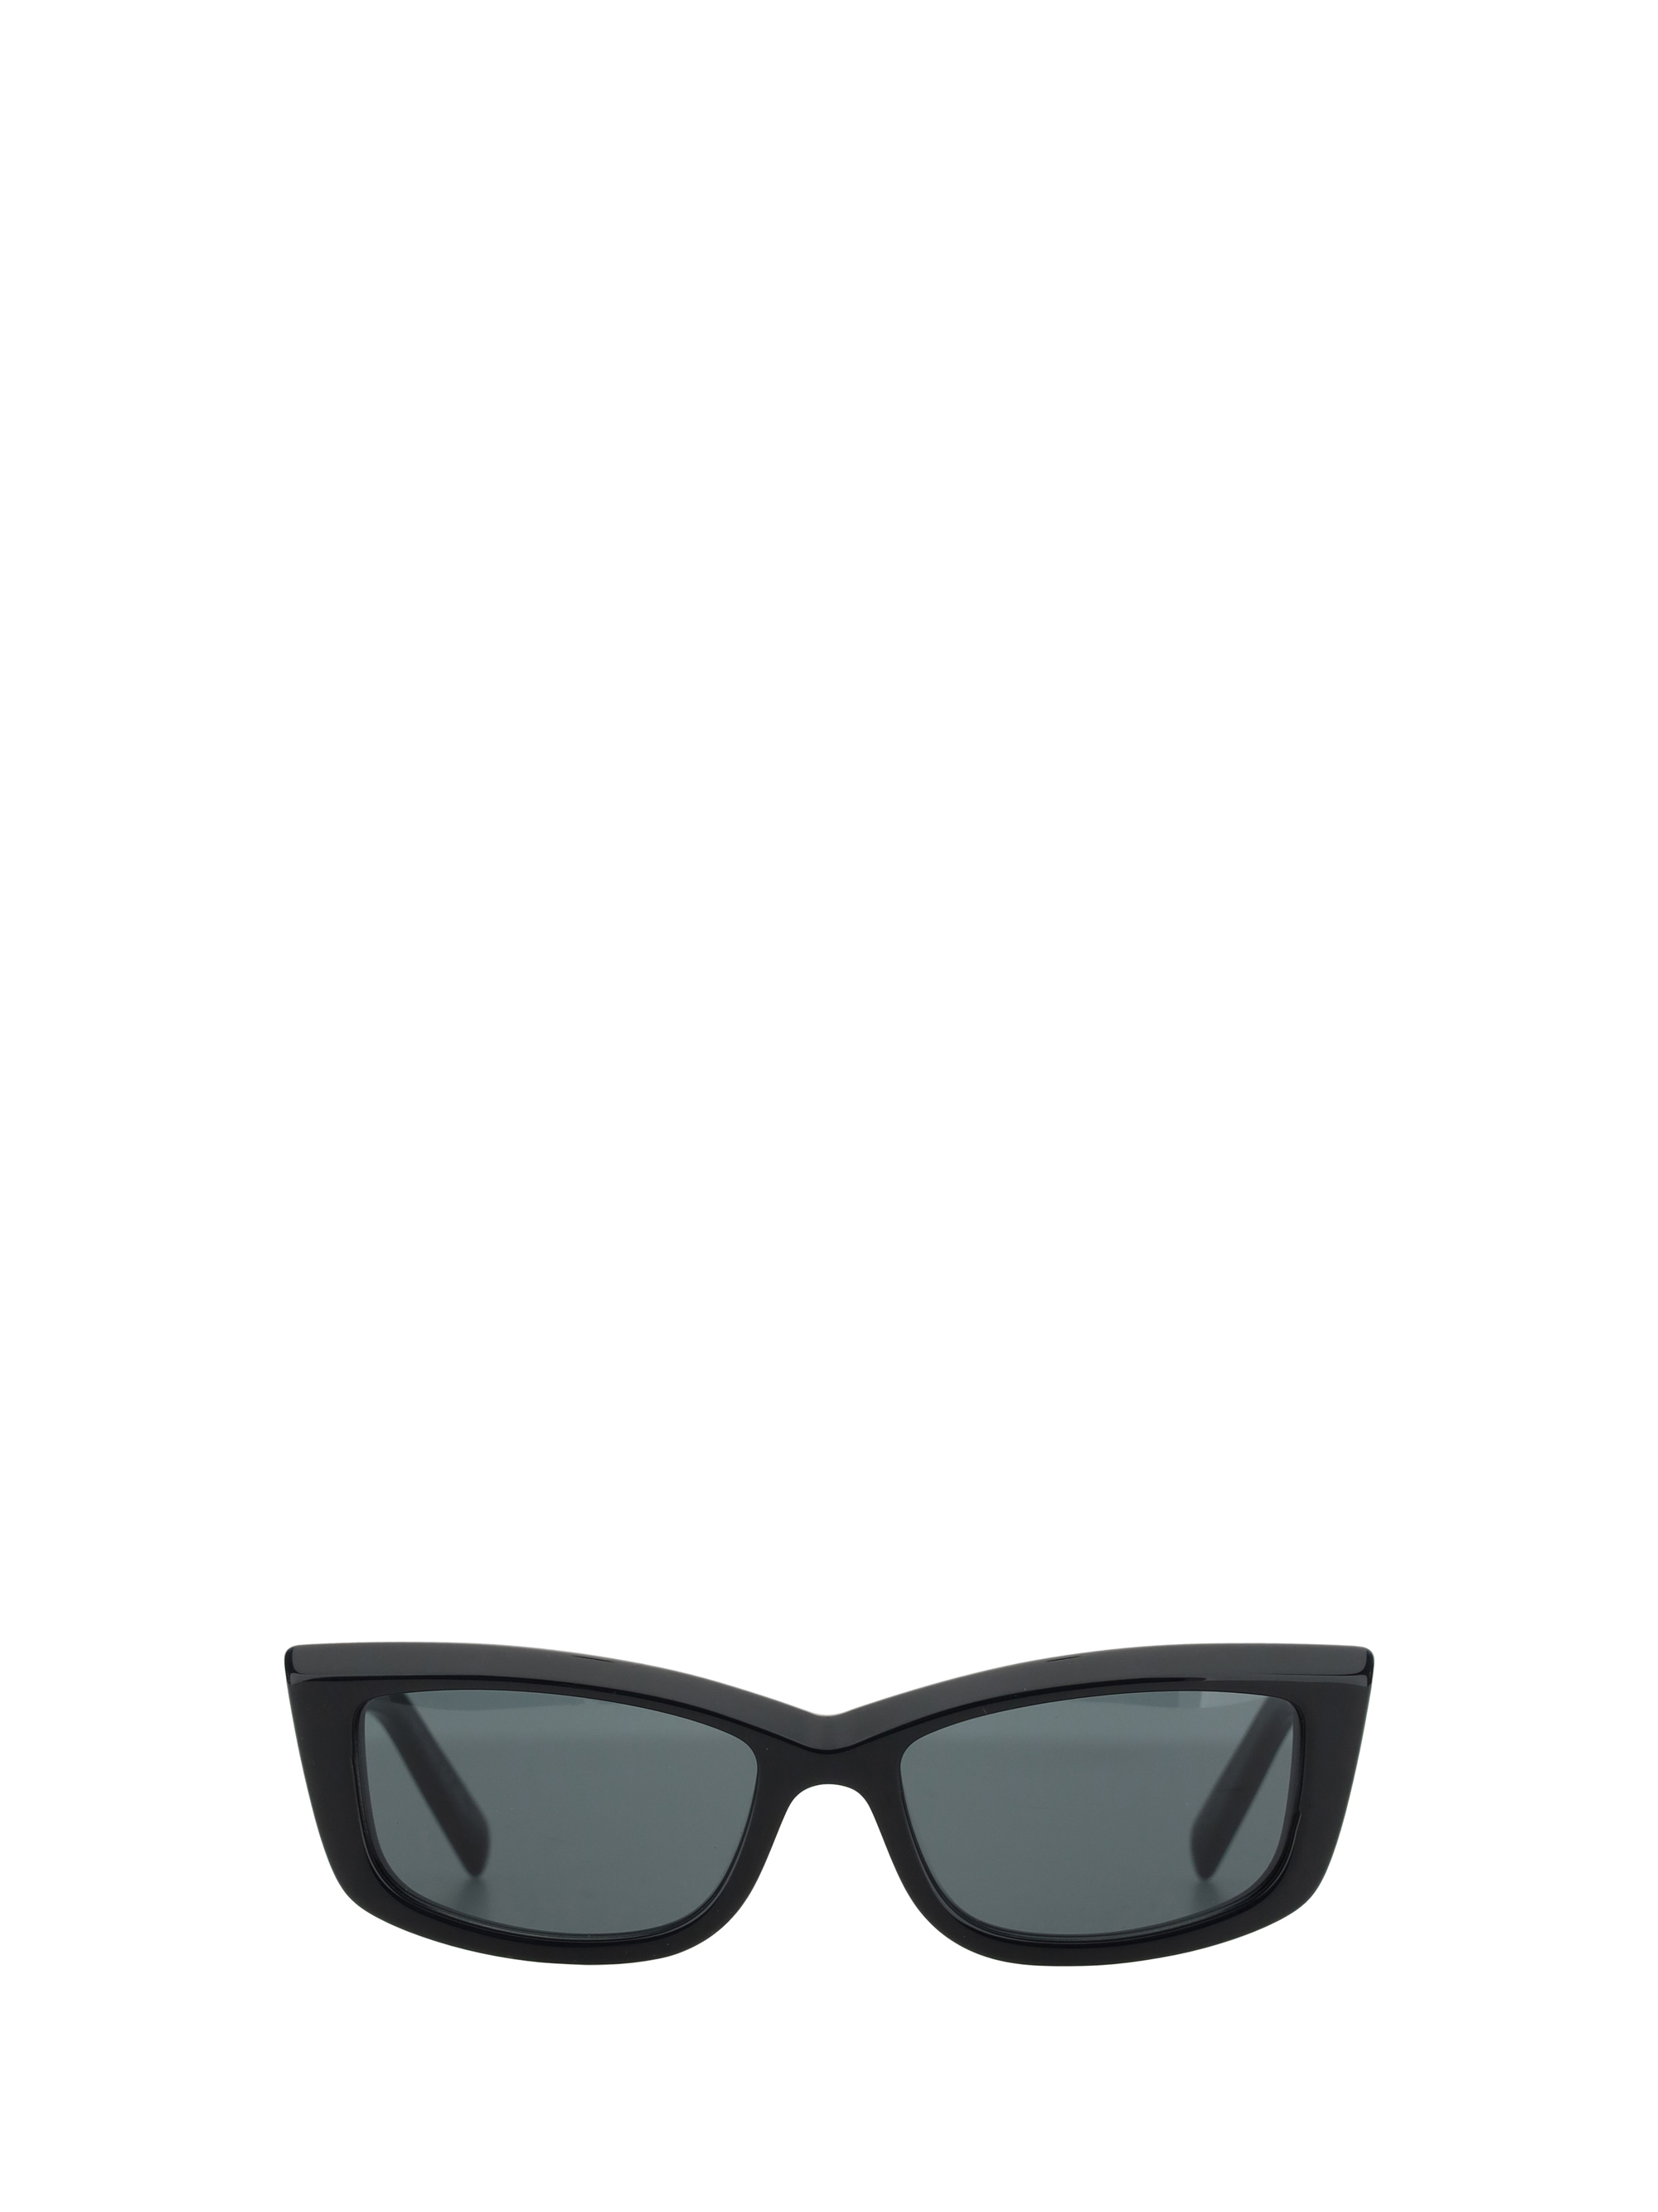 Saint Laurent Sunglasses 658 In Black Black Black